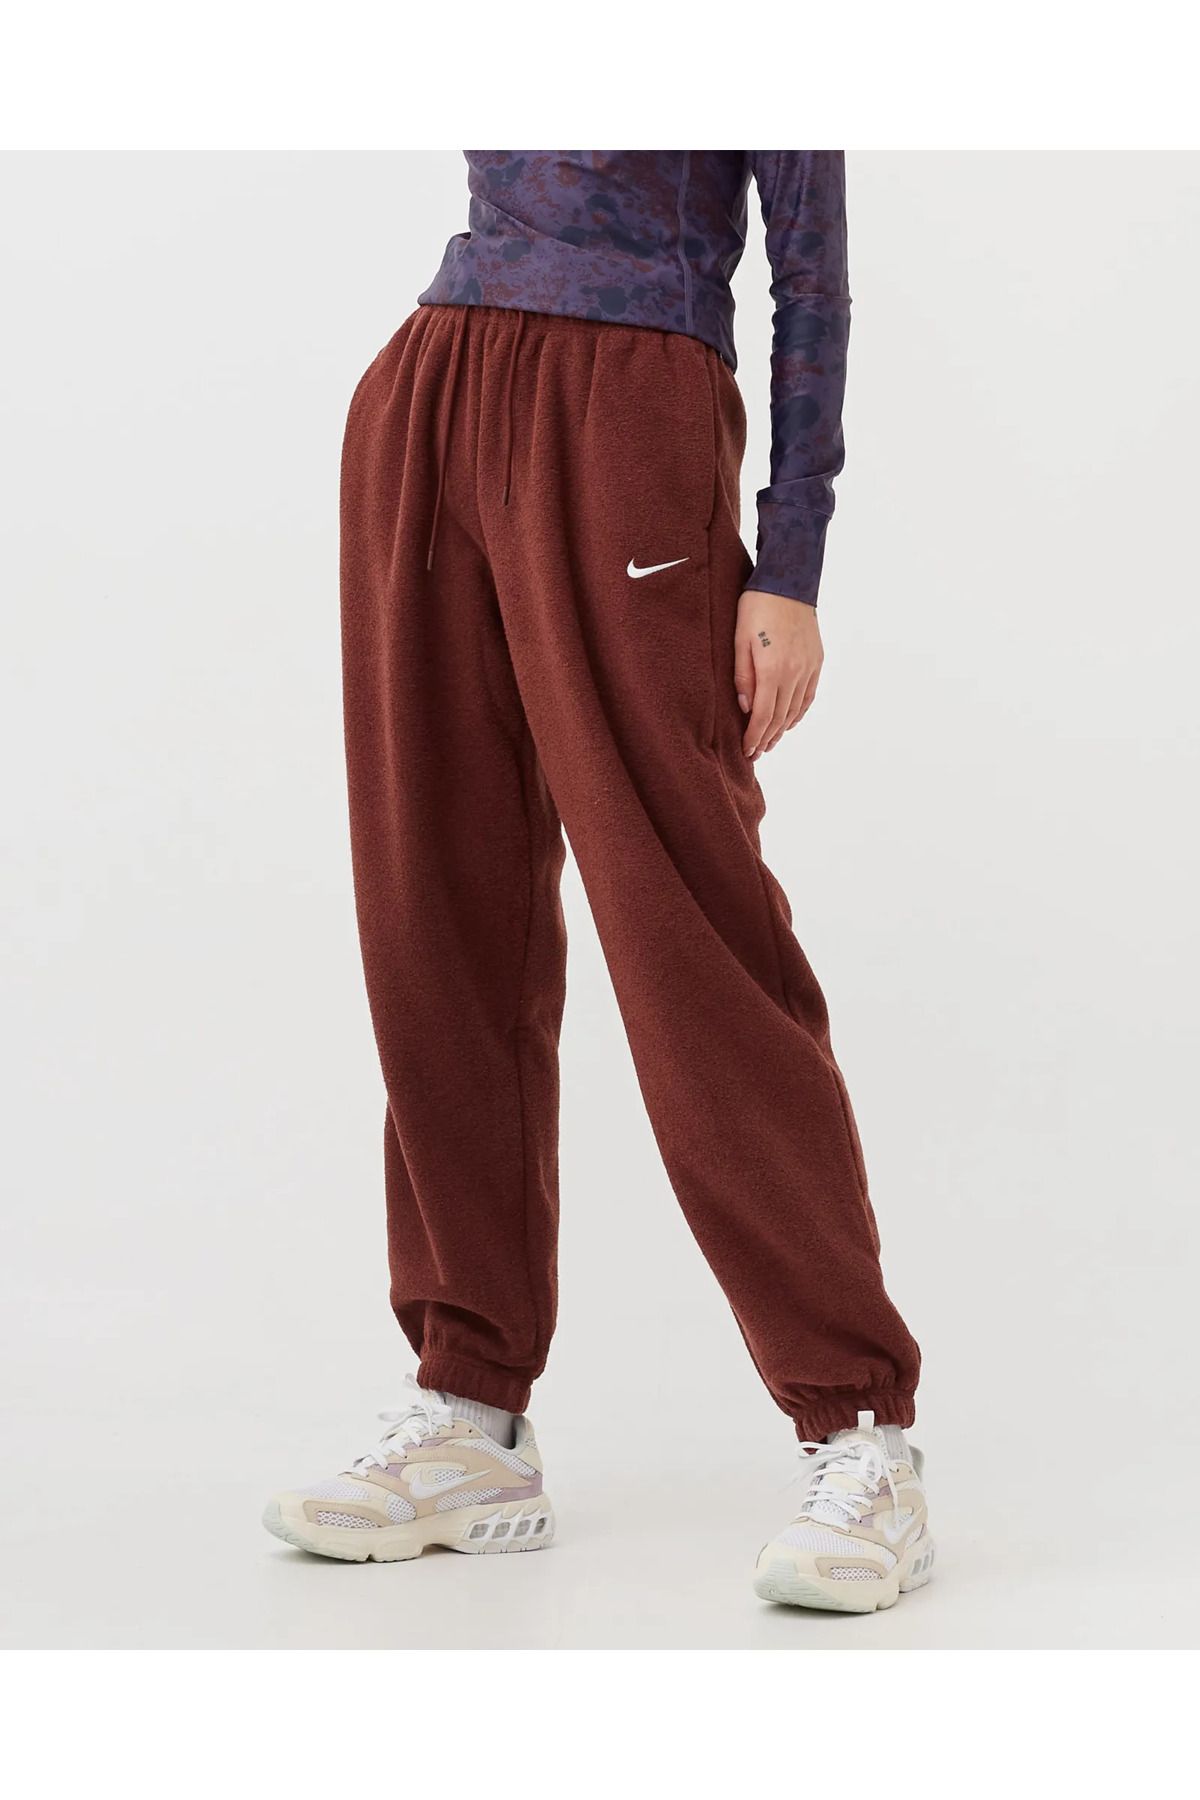 Nike Womens Sportswear Kadın Kahverengi Polar Eşofman Altı